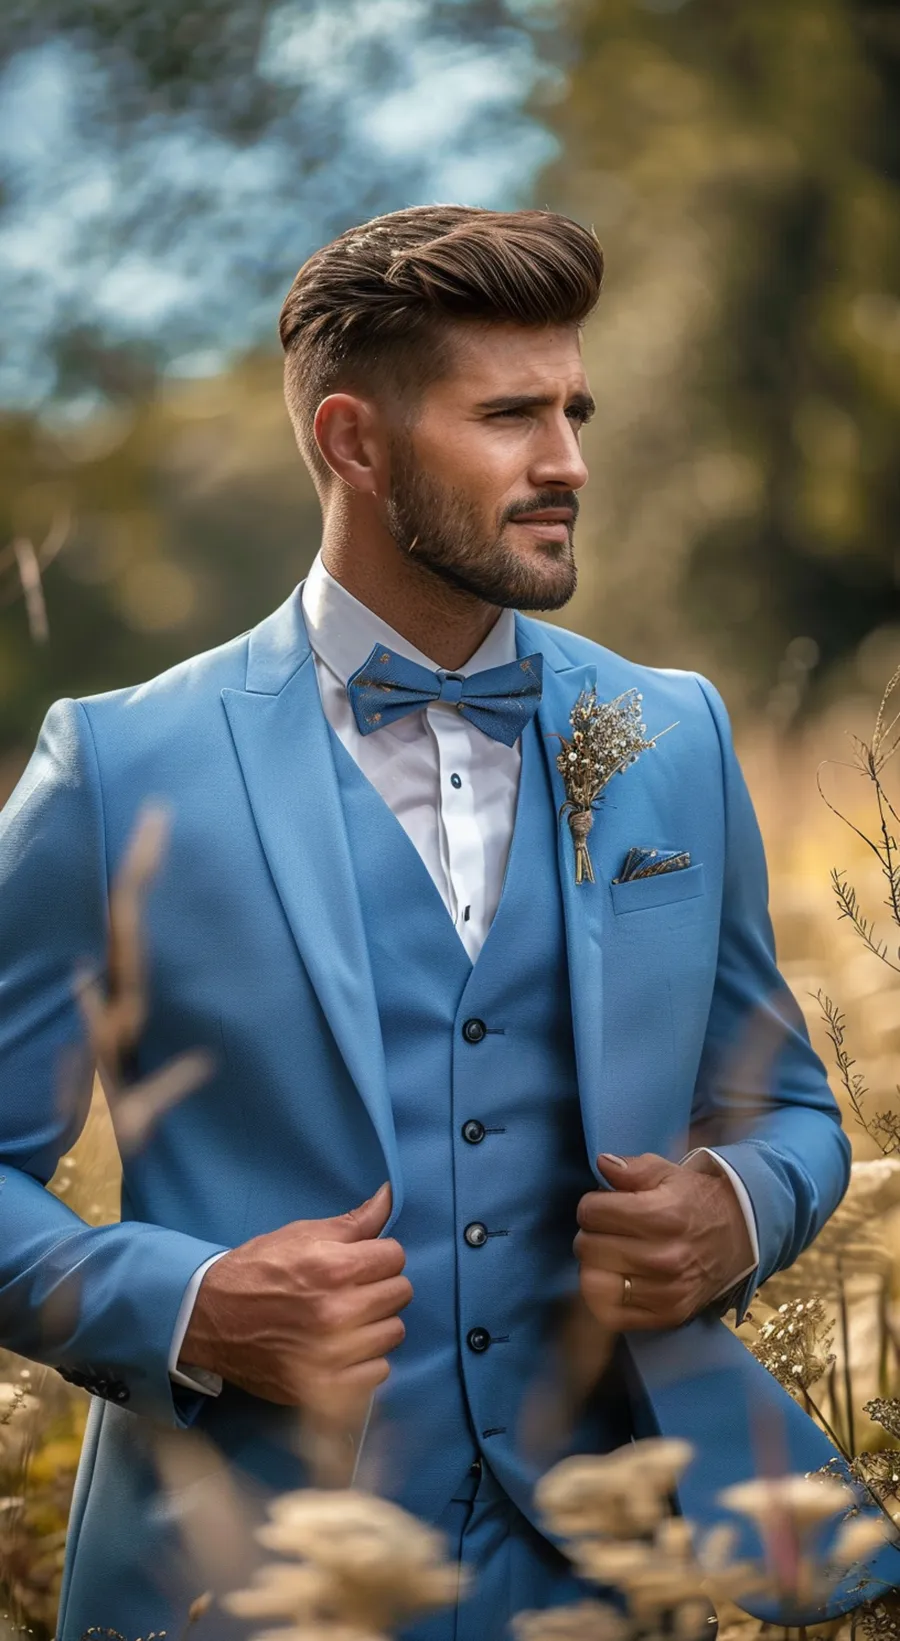 Bräutigam in blauem Hochzeitsanzug steht im Kornfeld